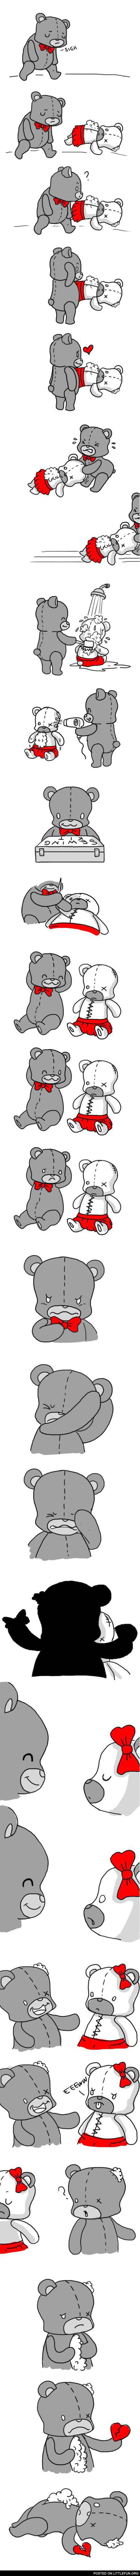 Teddy bear love story